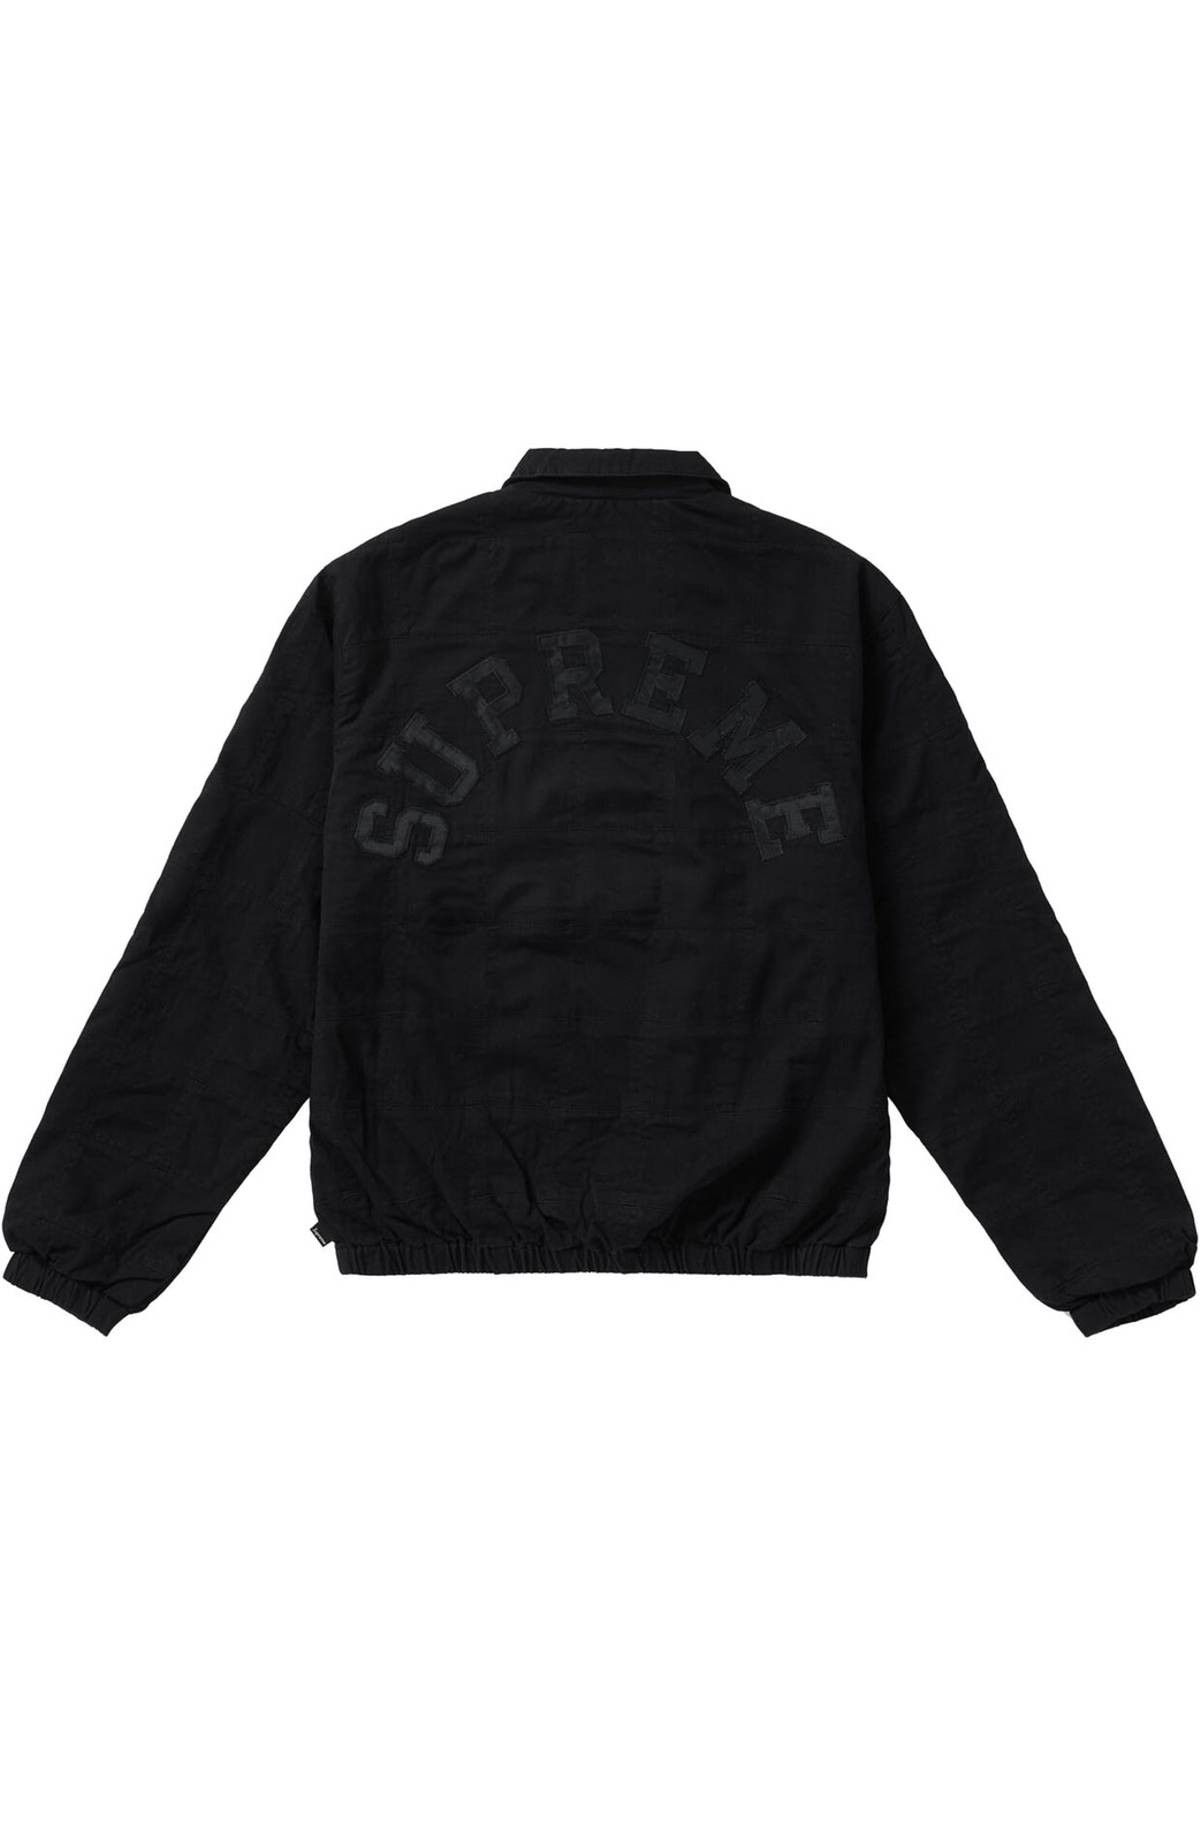 Supreme Supreme Patchwork Harrington Jacket Black SS19 | Grailed